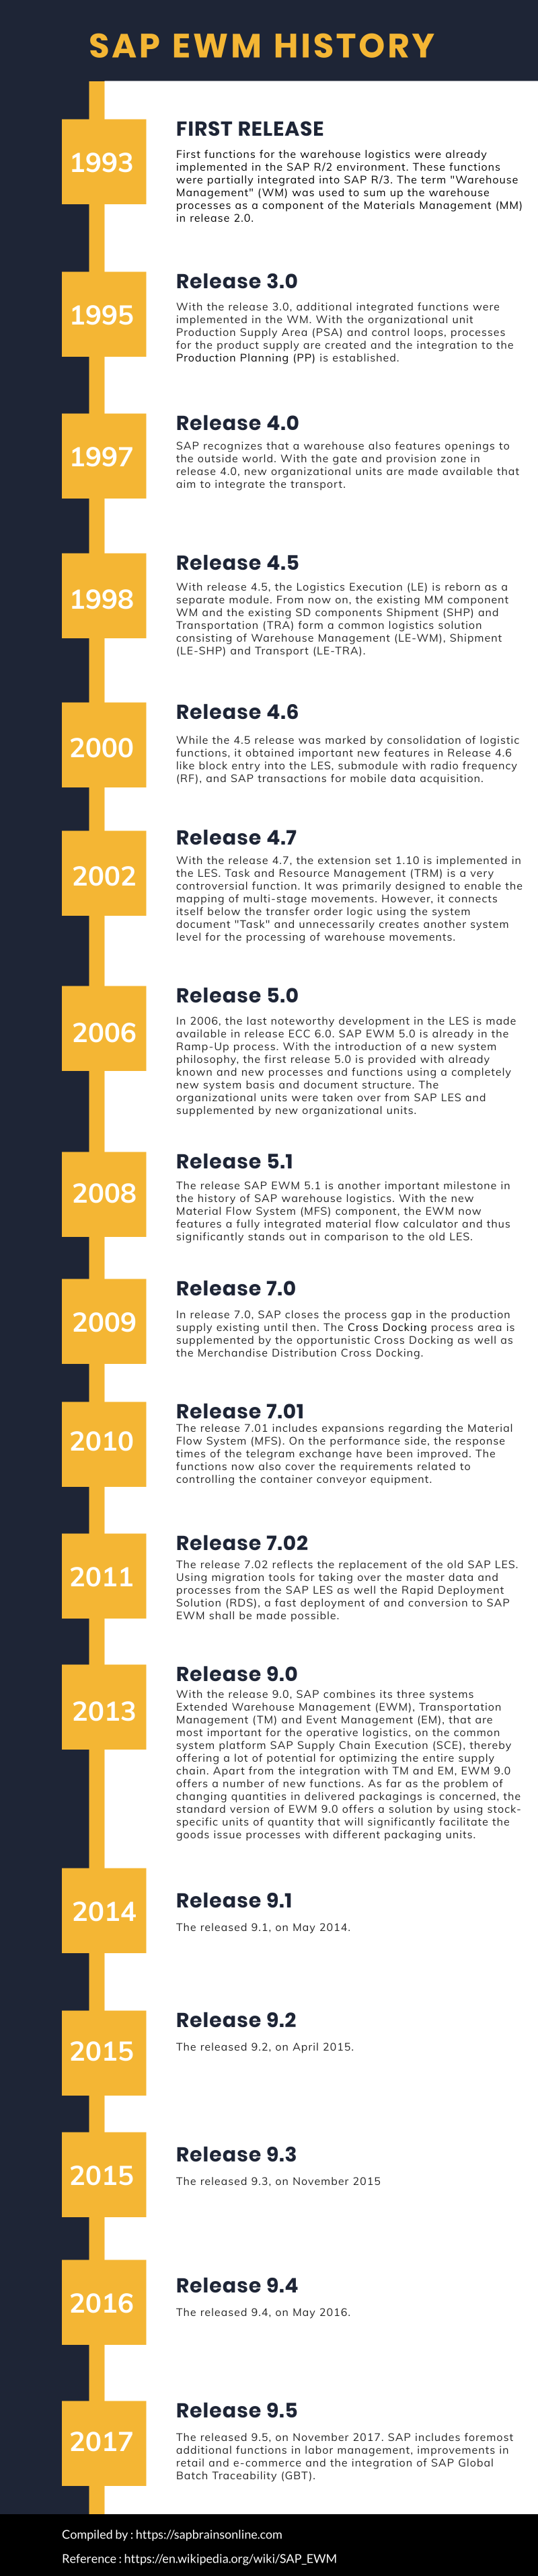 SAP EWM Version History infographic